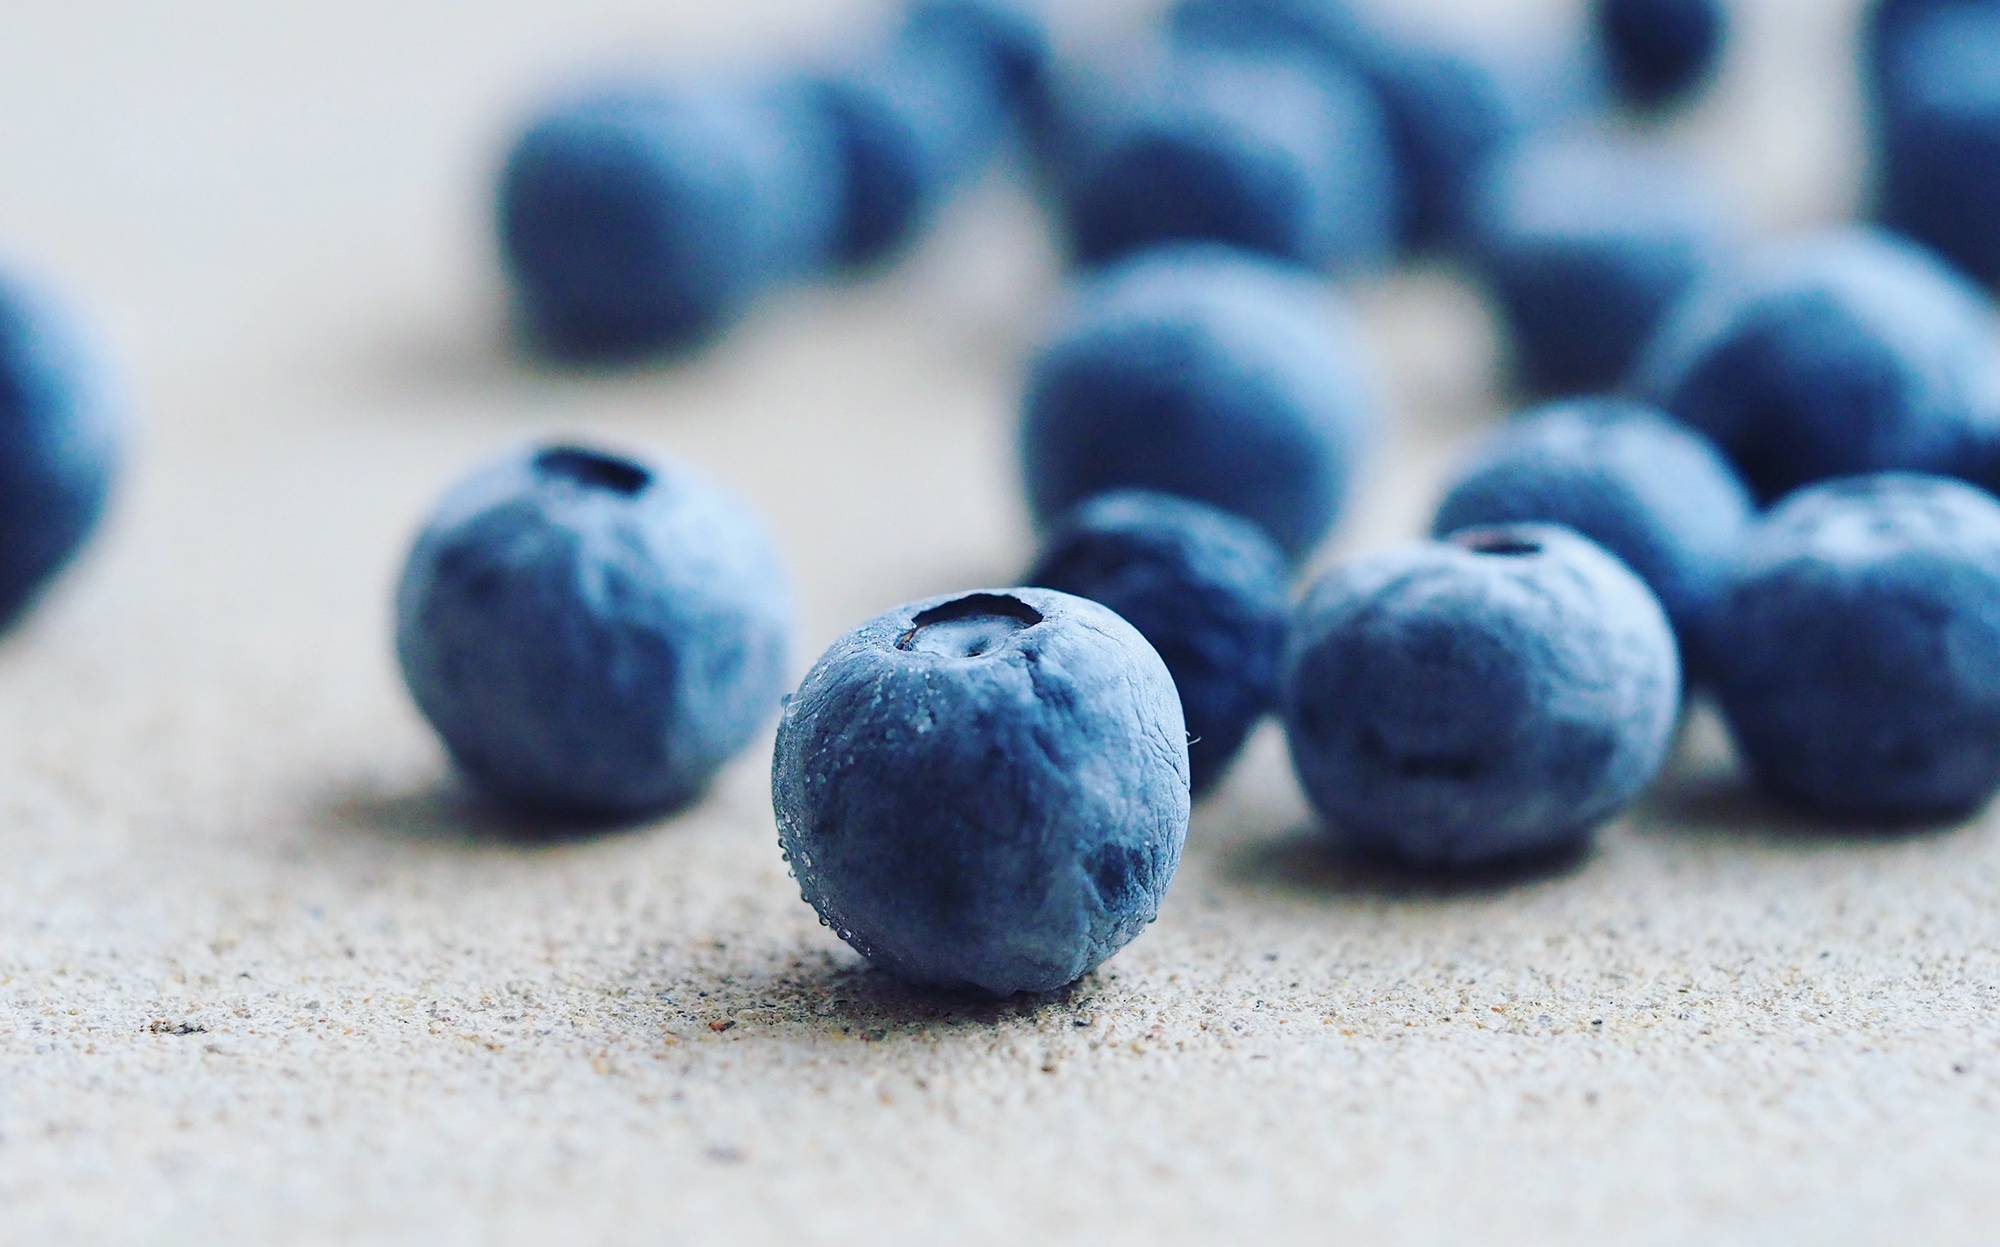 blauwe bessen zijn gezond - antioxidanten - ijsjes - hersenen